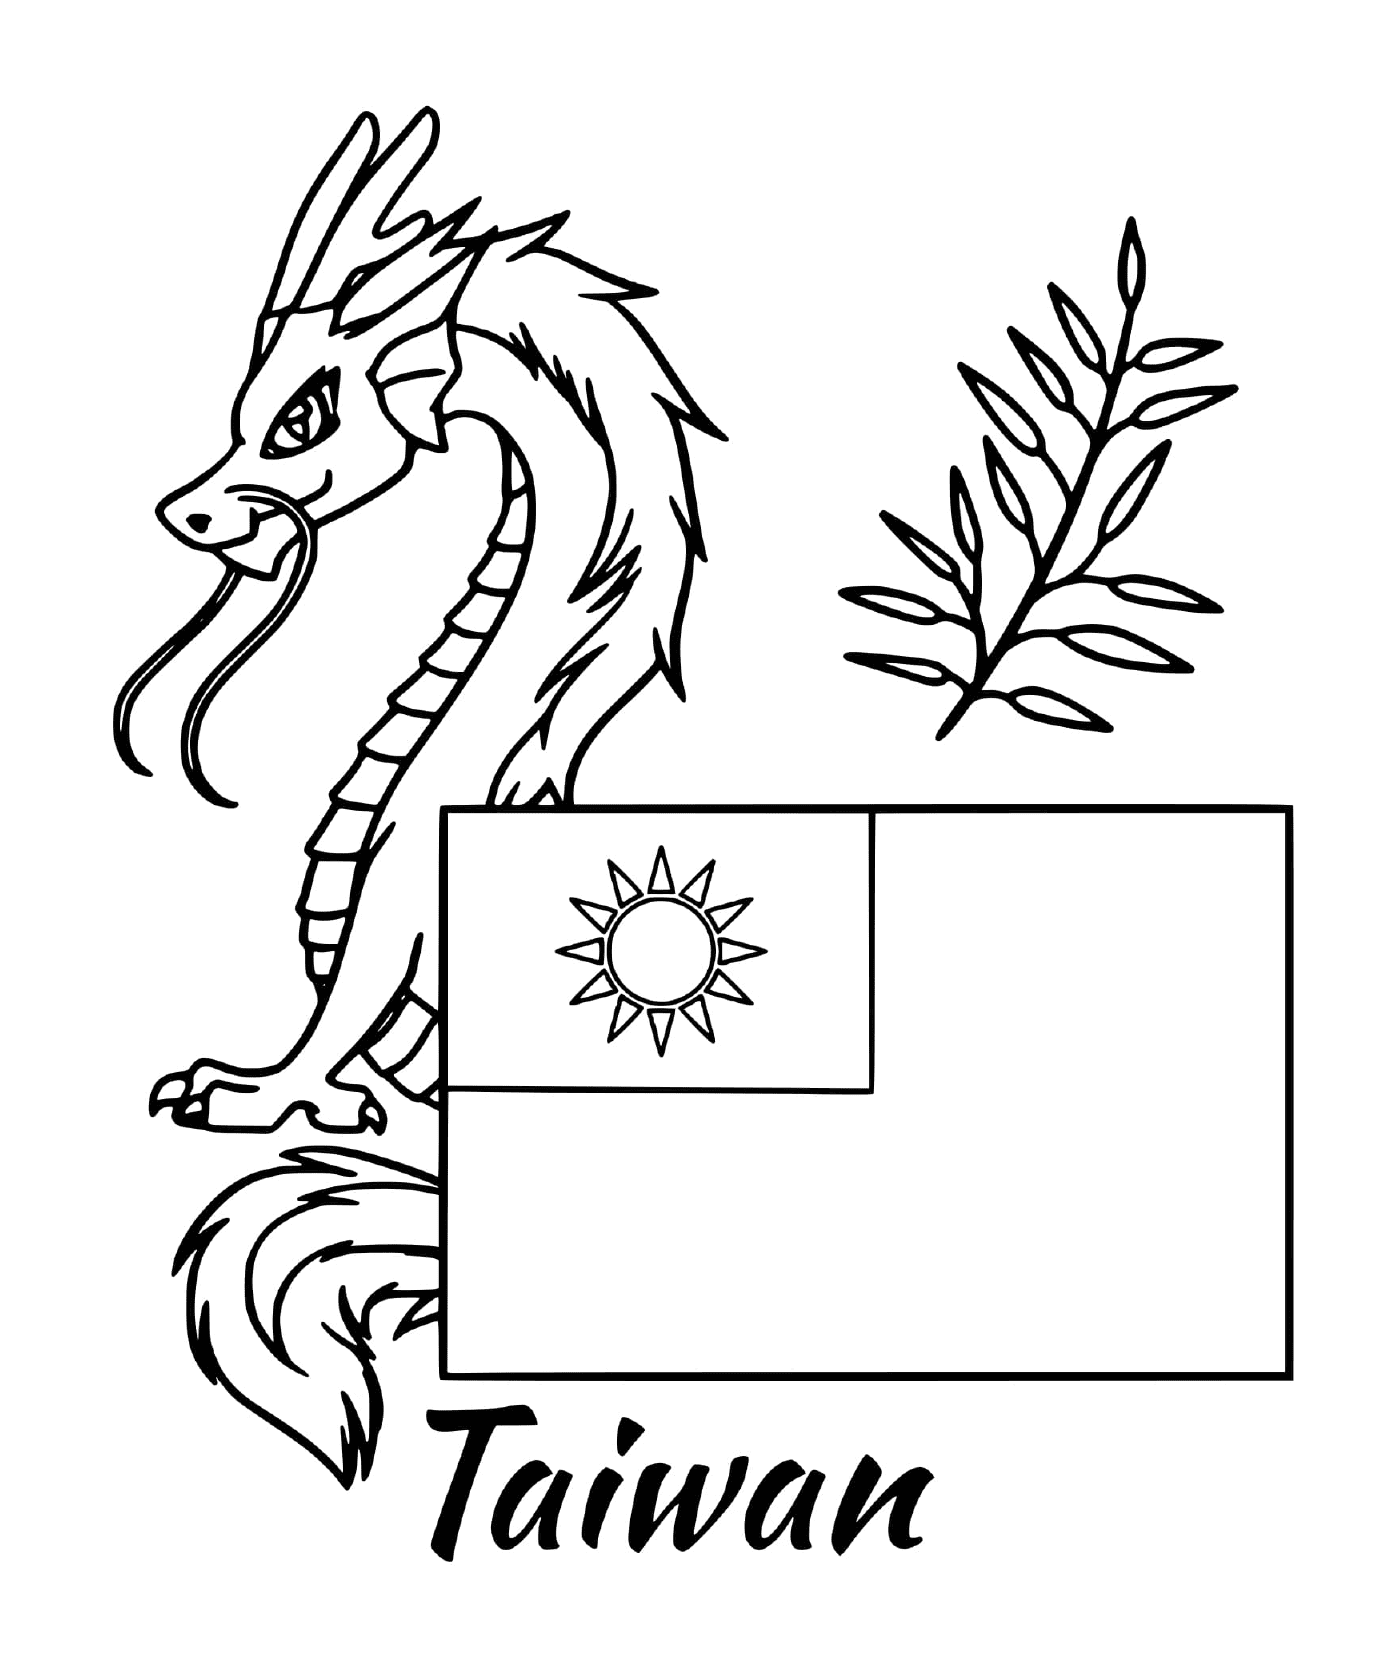  Taiwan Flagge mit einem Drachen 